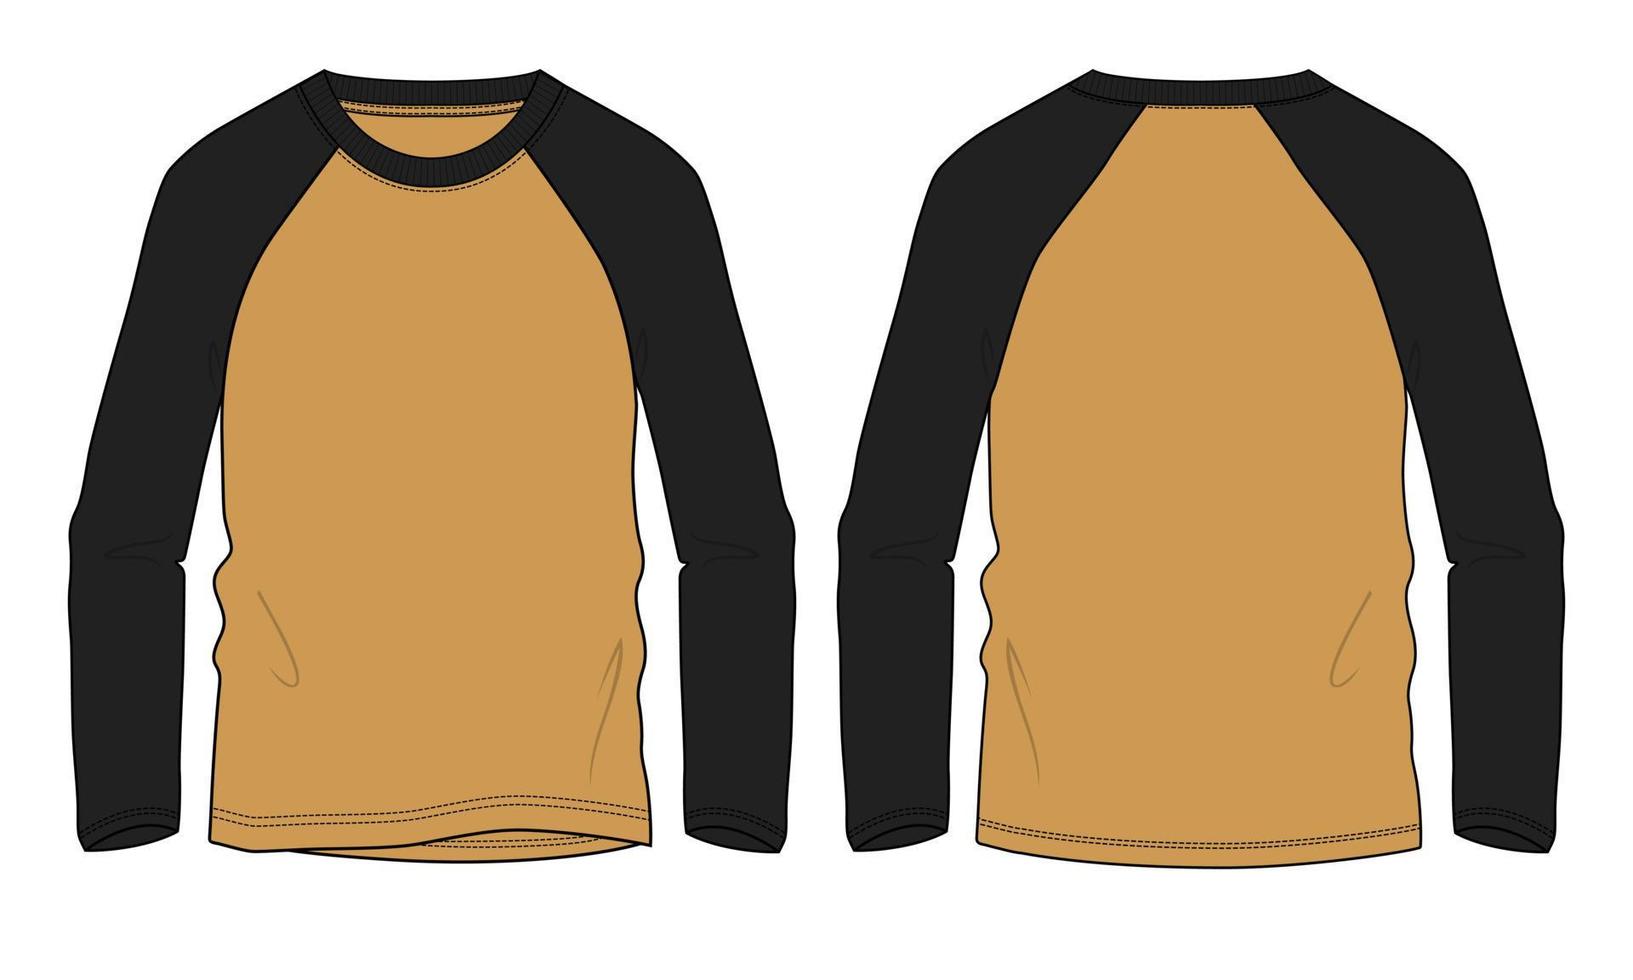 zweifarbiges Raglan-Langarm-T-Shirt technische Mode flache Skizzenvektor-Illustrationsvorlage vektor